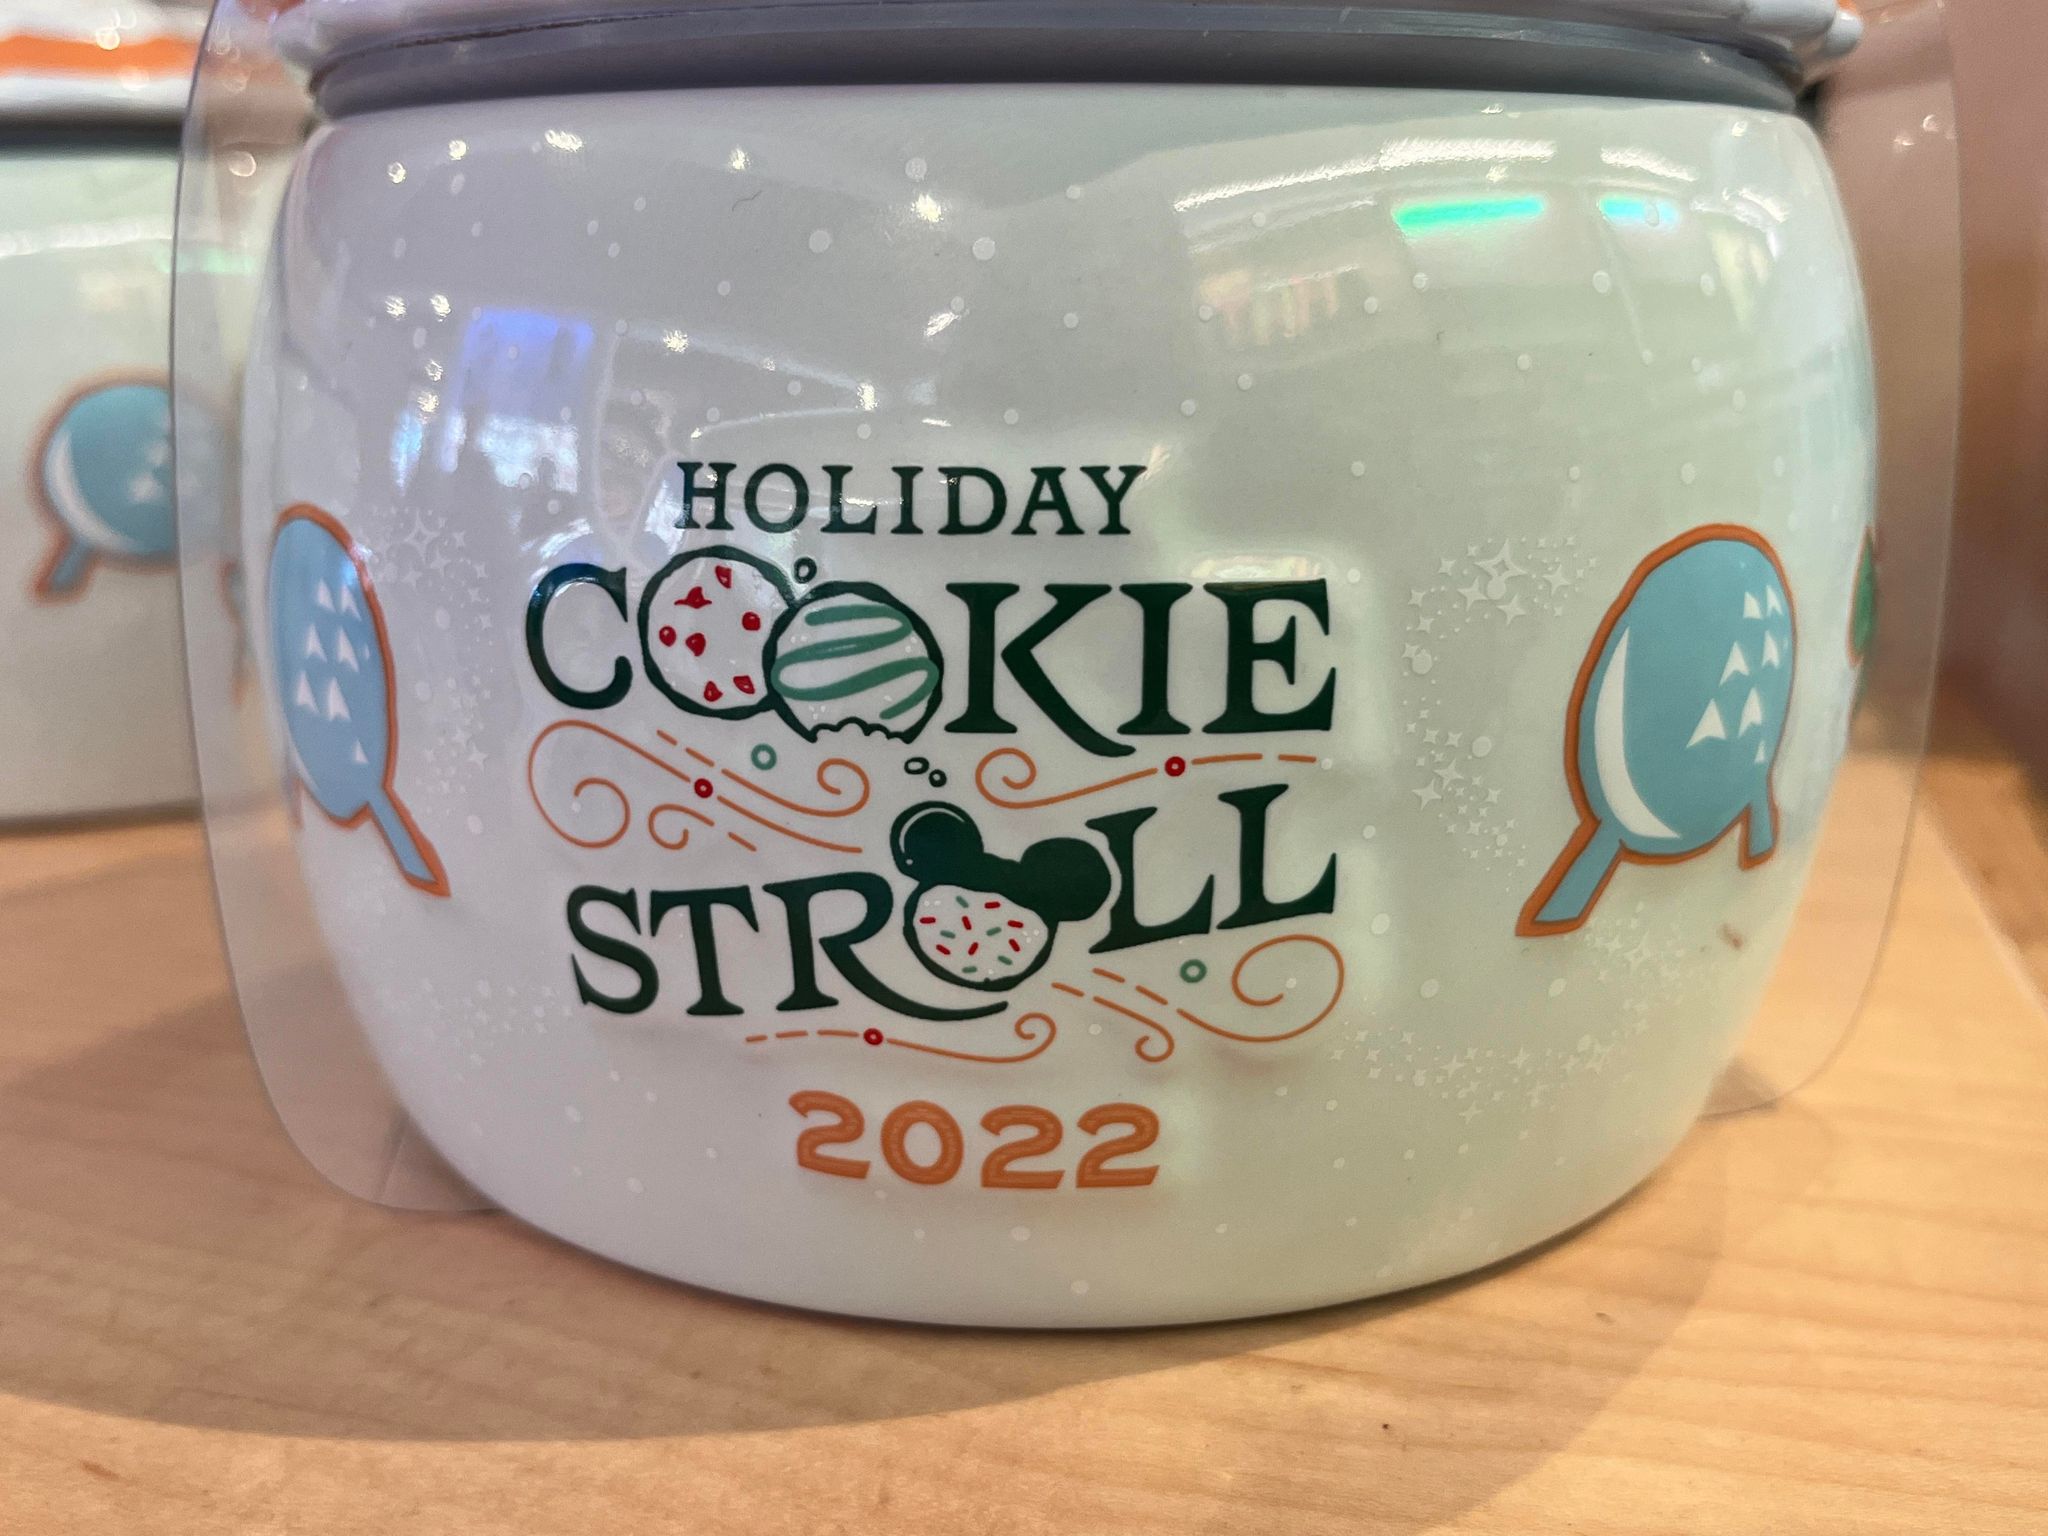 cookie stroll 2022 jar